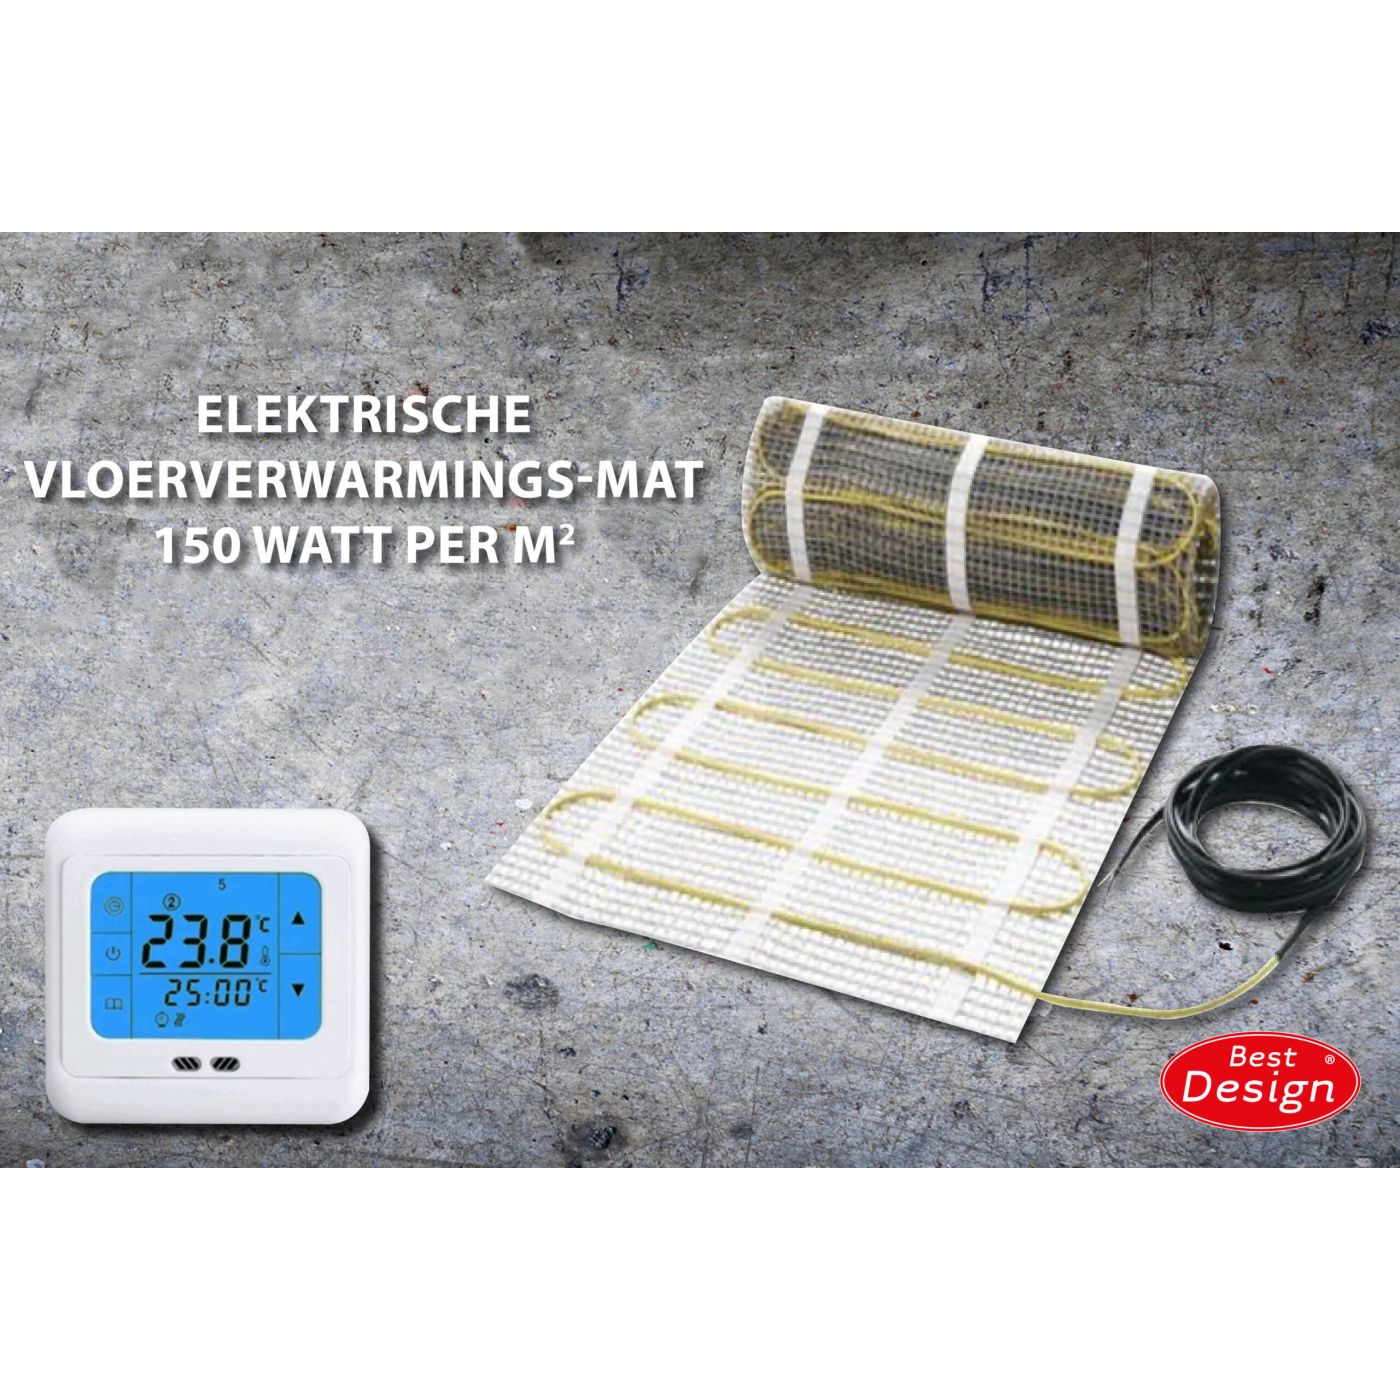 Best Design Comfort elektrische vloerverwarming mat 9.0m2